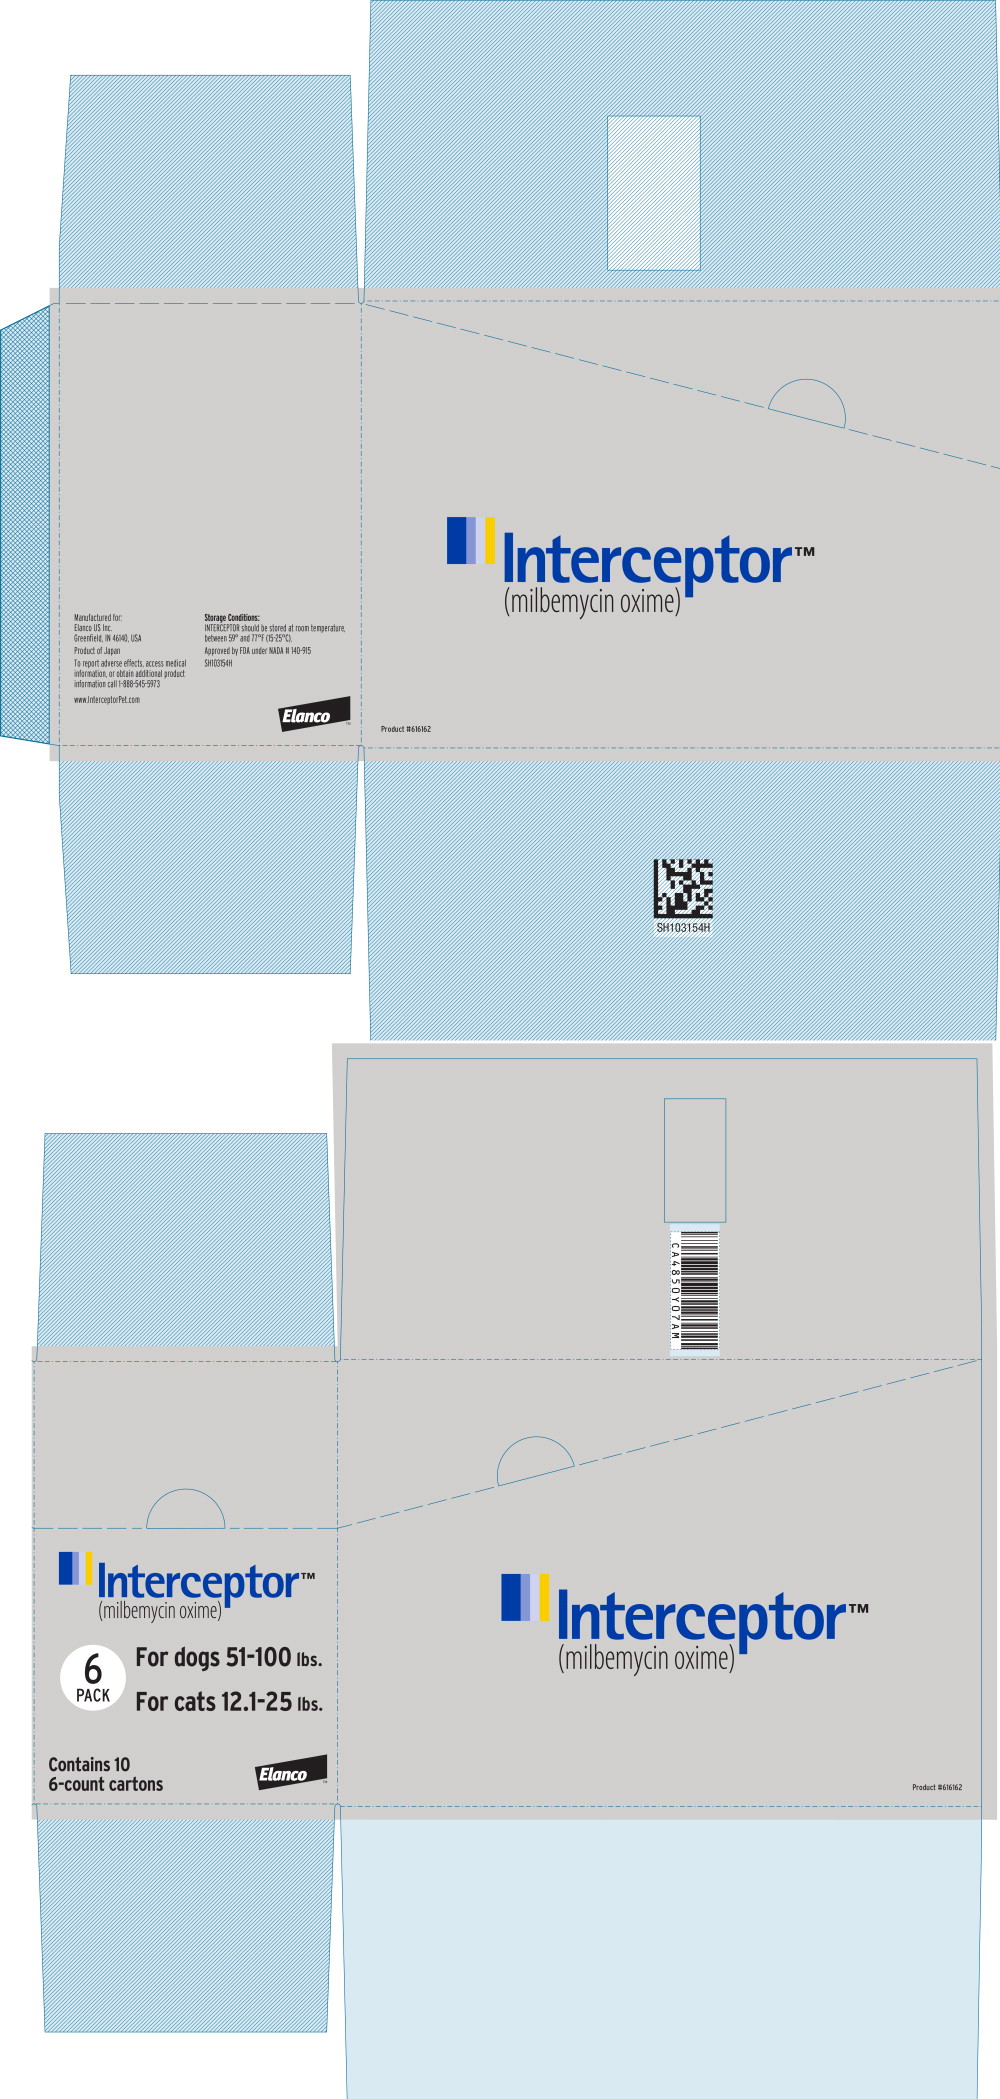 Principal Display Panel - Interceptor 23 mg Box Label
